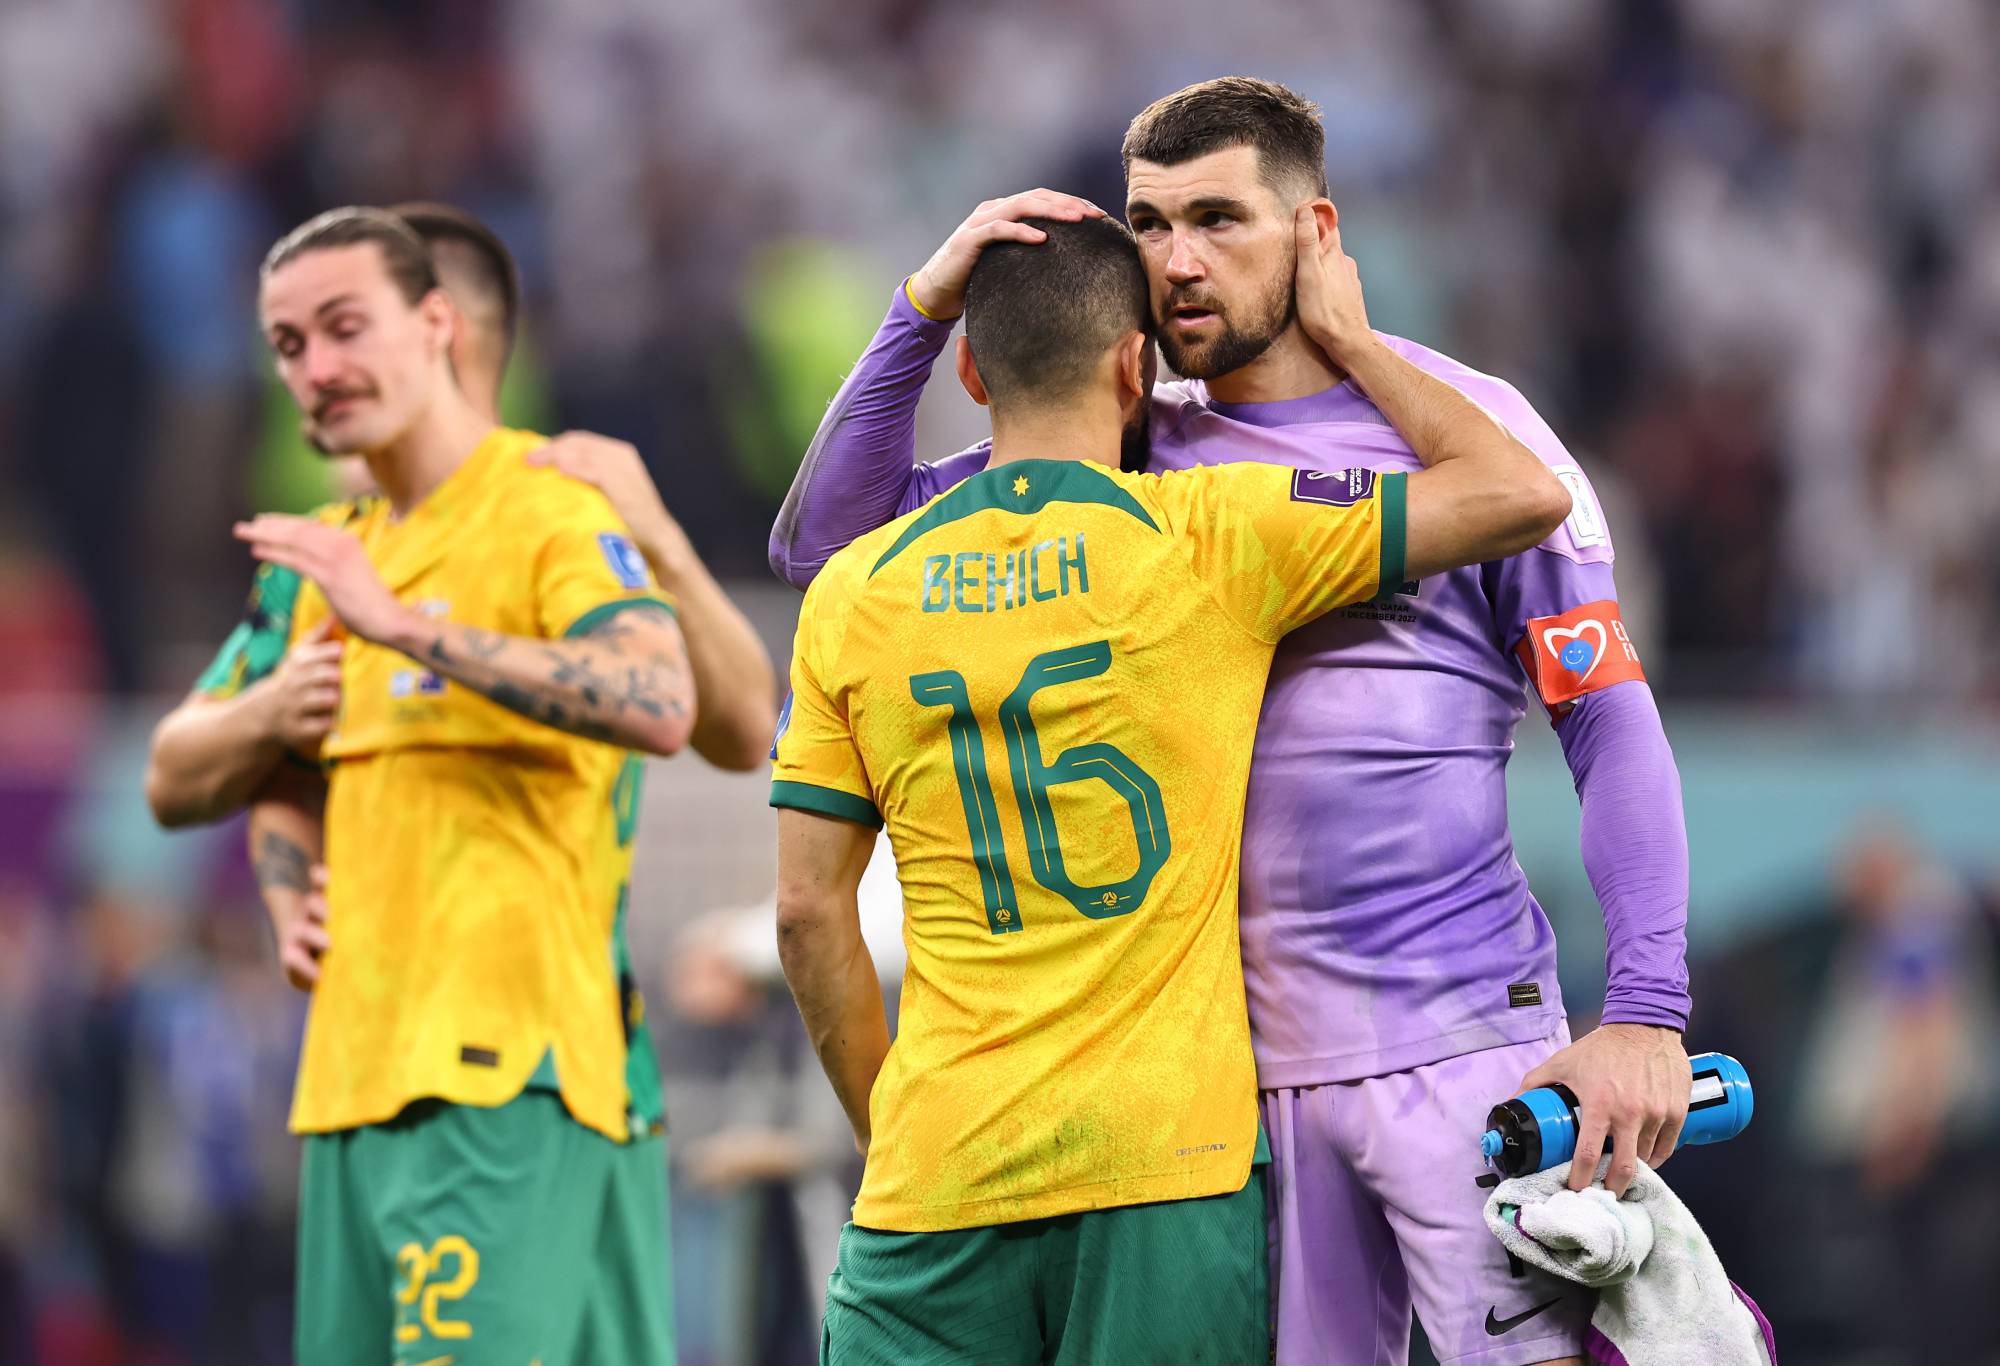 Bagaimana seluruh dunia melihat Socceroos dan Messi yang ‘seperti dewa’